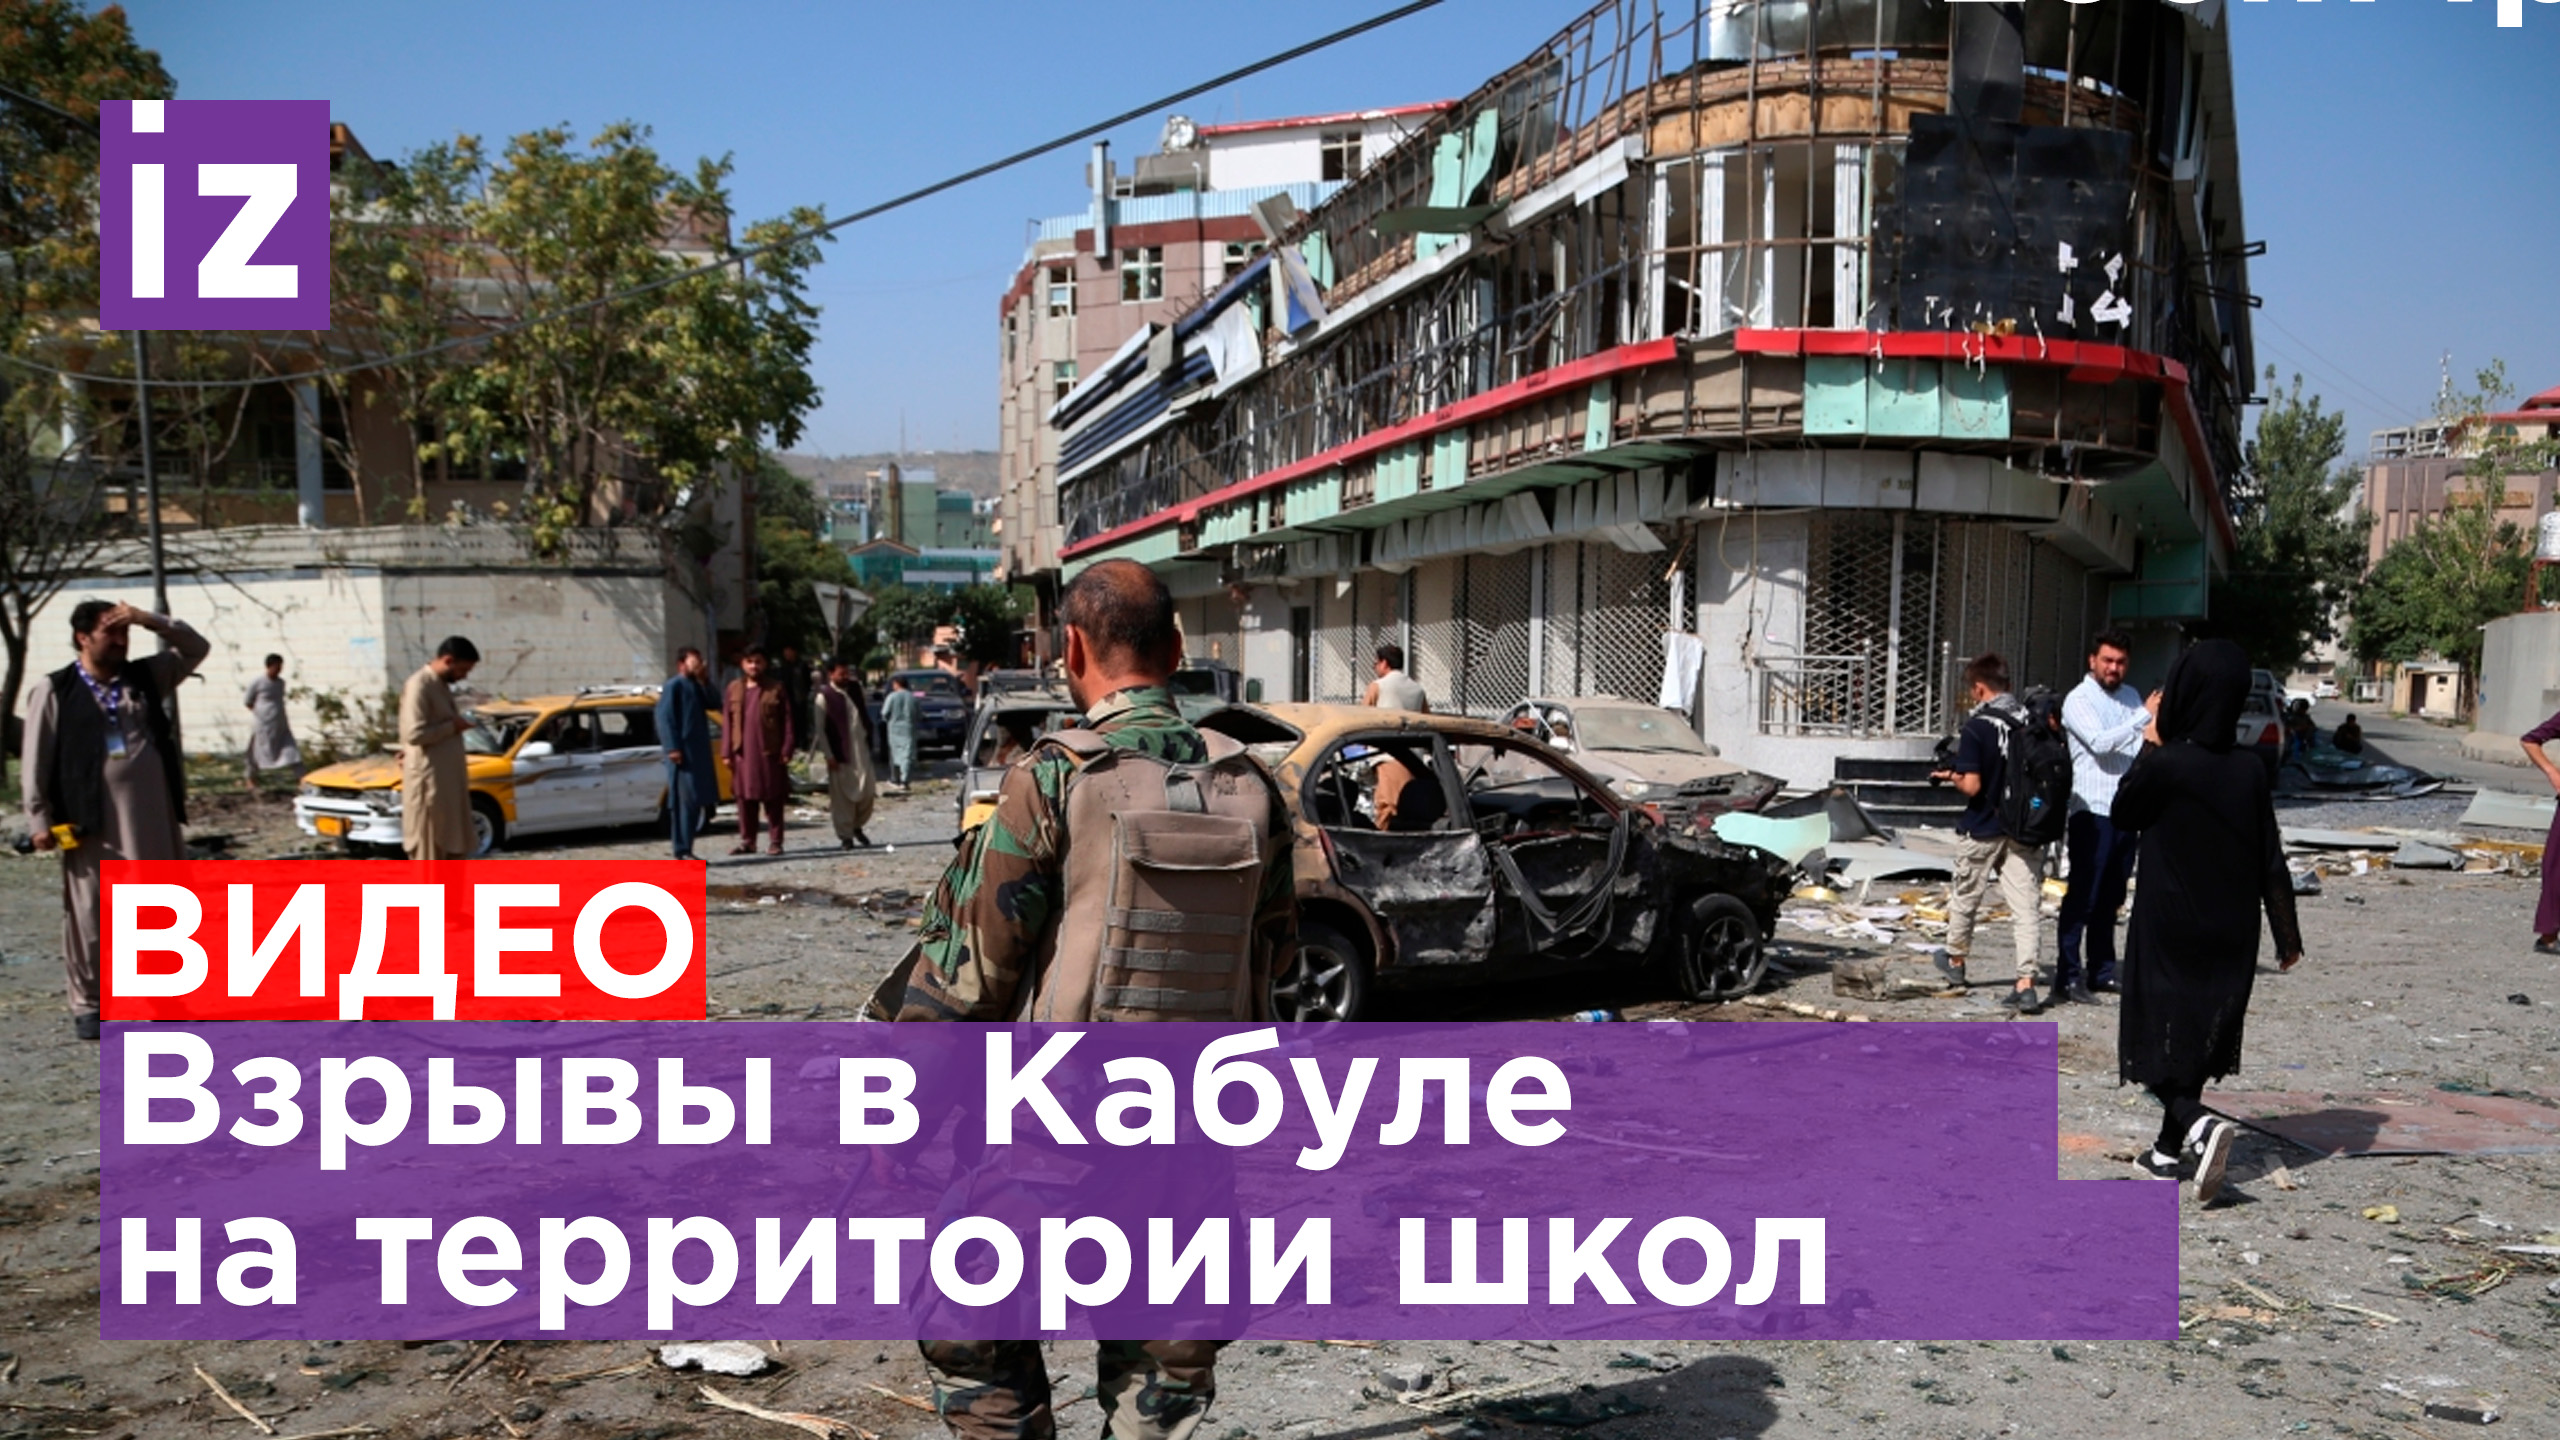 Два взрыва прогремели в Кабуле на территории школ / Известия